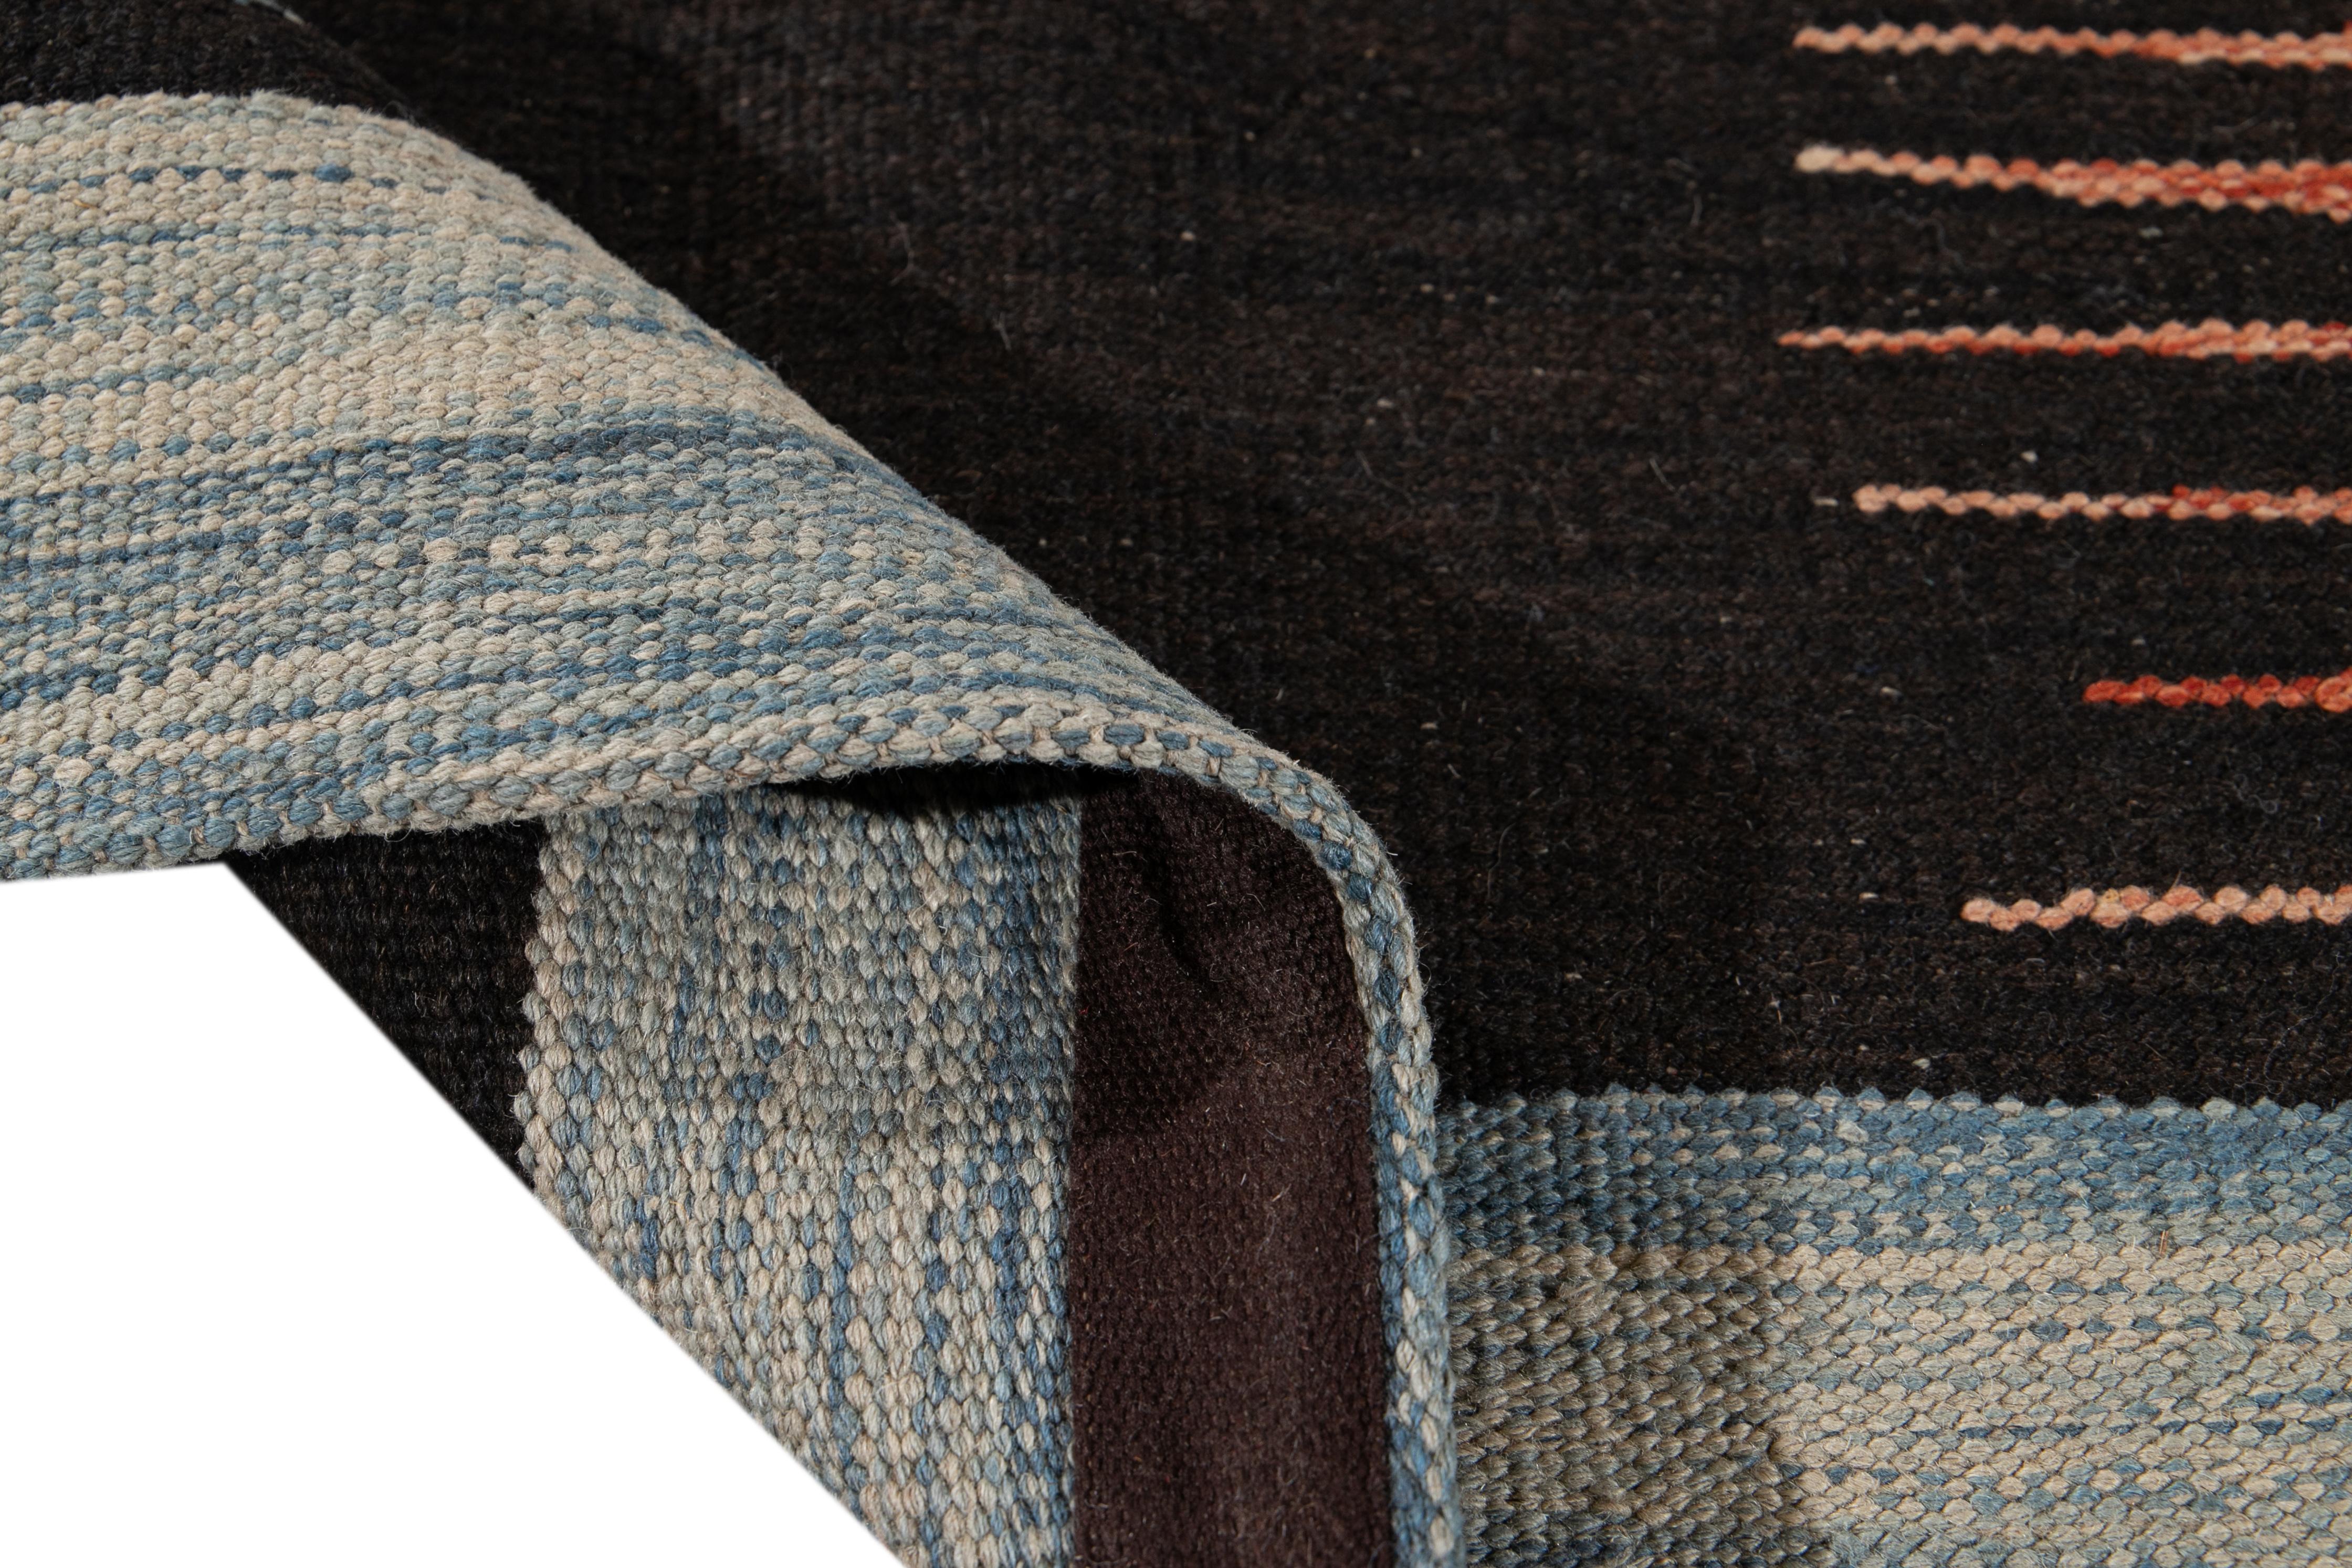 Schöner moderner flachgewebter Kilim Handmade Wollteppich. Dieser Kelimteppich hat ein Feld aus Blau, Braun und Orange in einem wunderschönen geometrischen expressionistischen Design.

Dieser Teppich misst: 8'1